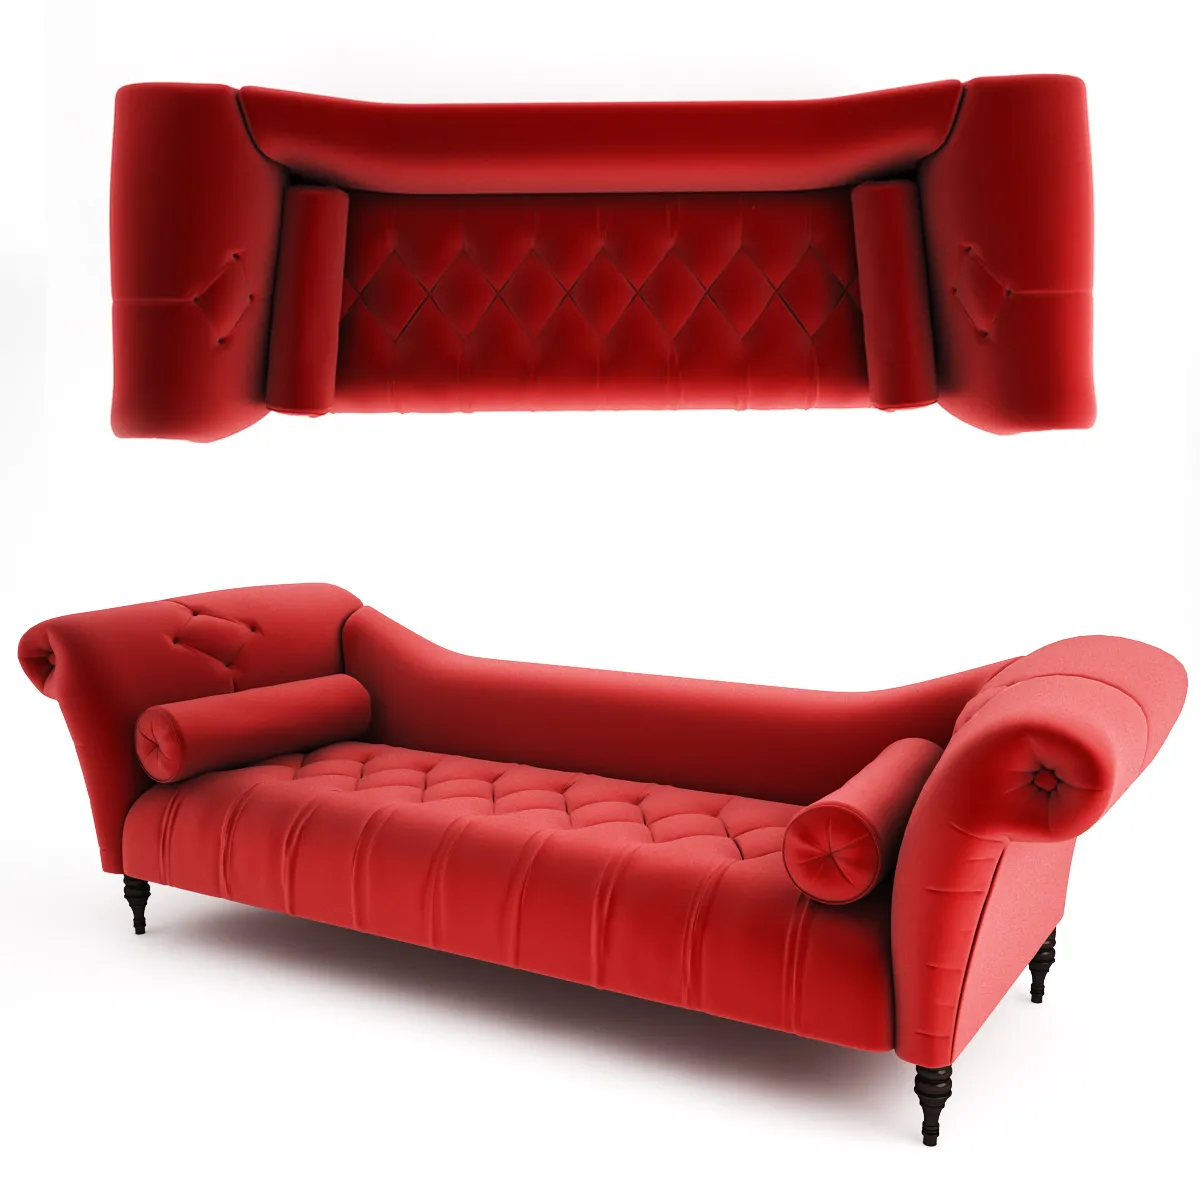 SOFA – BrandoRed Sofa